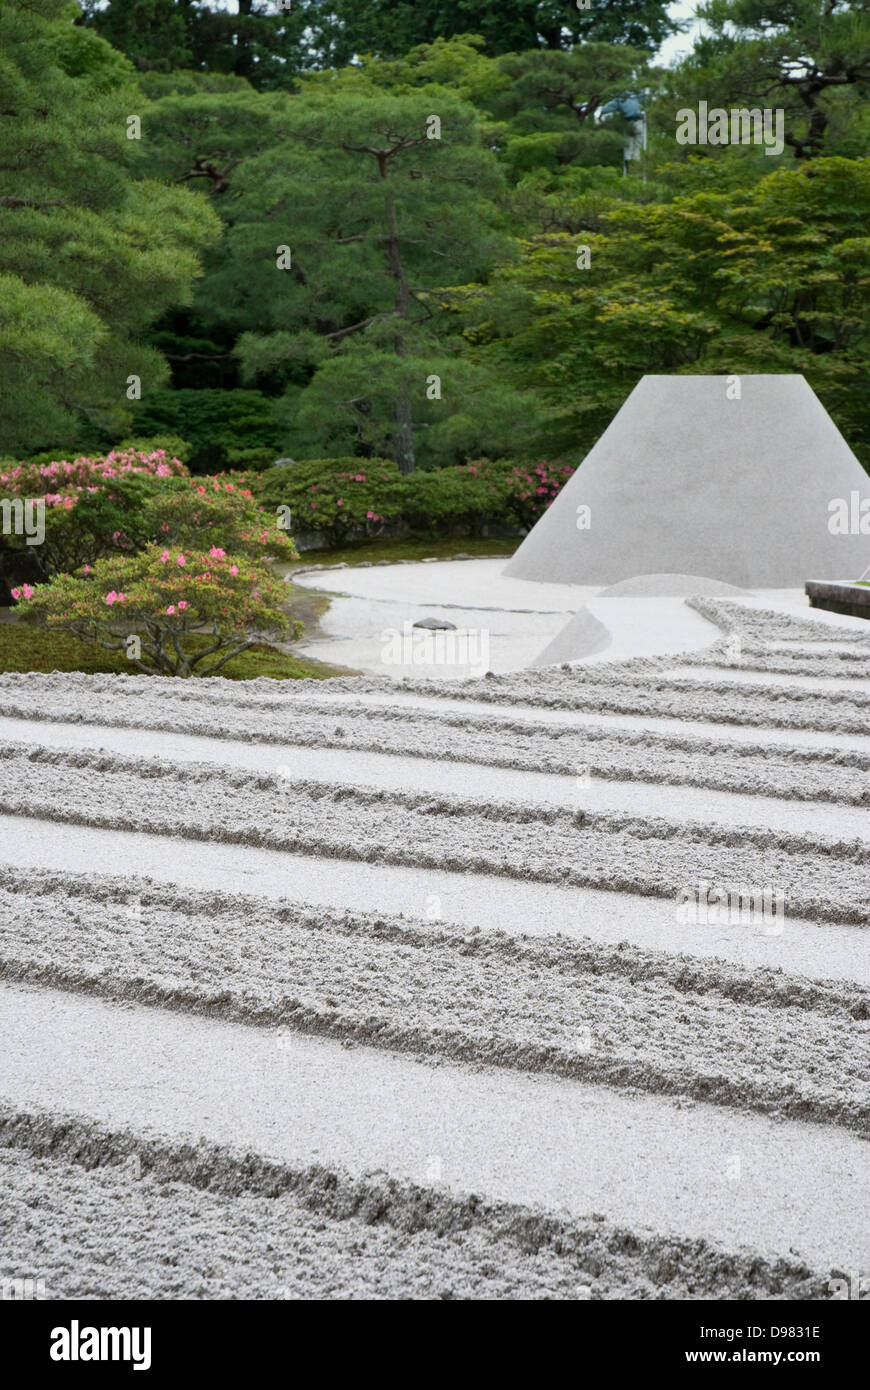 Jardin zen de sable Ginshadan sculpture au pavillon de l'argent Ginkakuji Temple Kyoto au Japon Banque D'Images